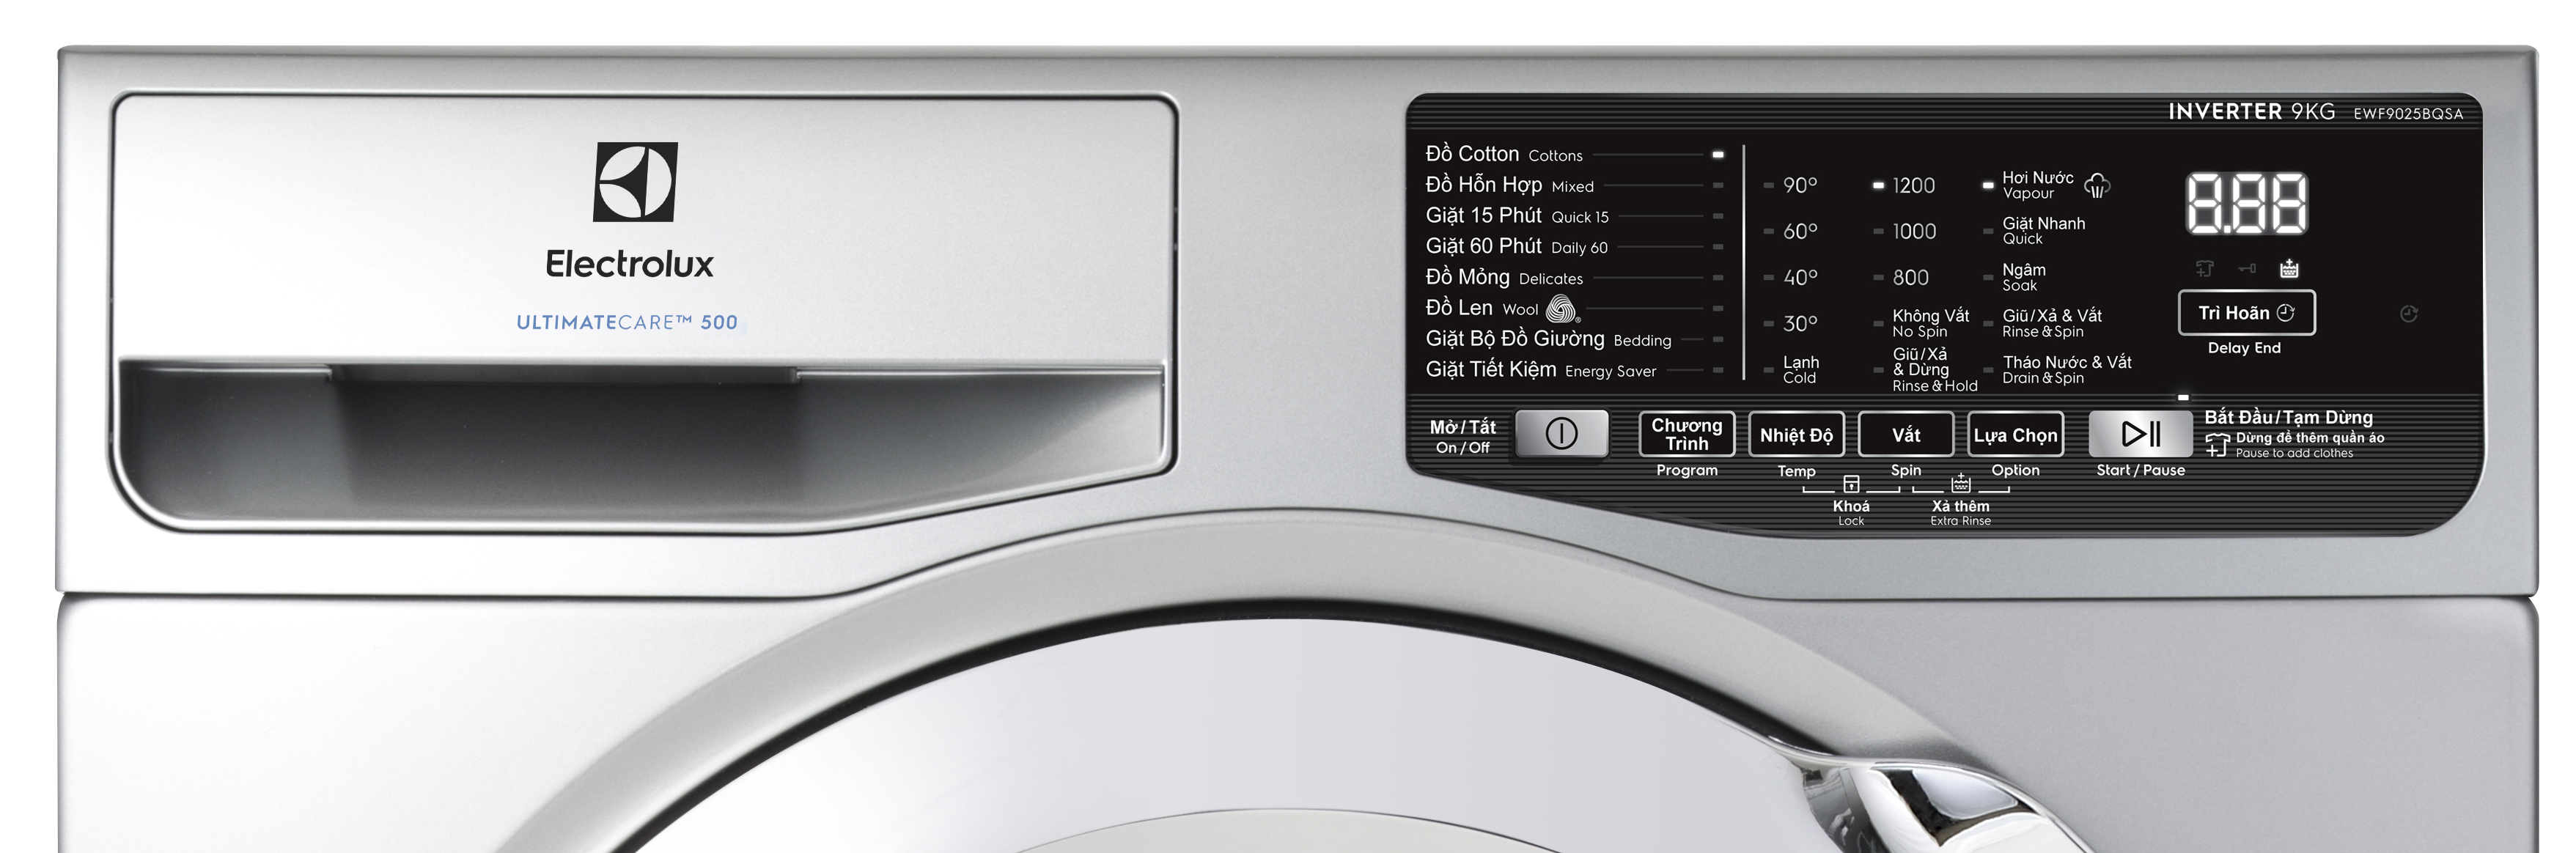 Máy giặt 9kg Electrolux EWF9025BQSA -Màu bạc- Diệt khuẩn- Tiết kiệm năng lượng-Chính hãng